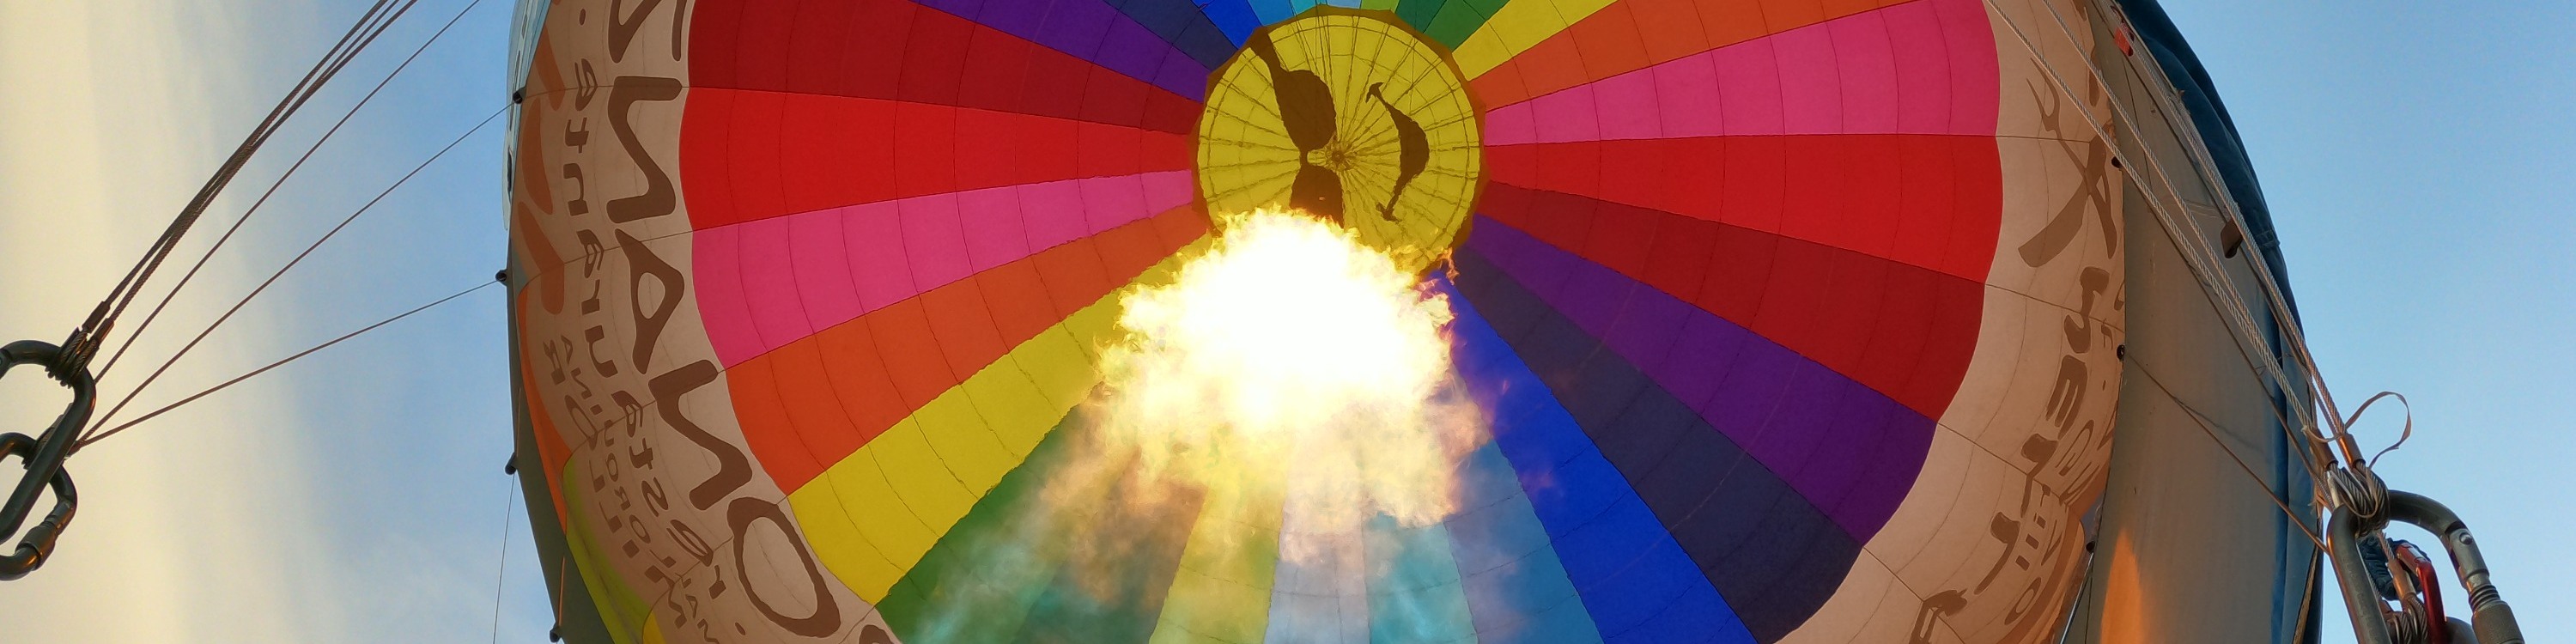 馬約卡島熱氣球飛行體驗